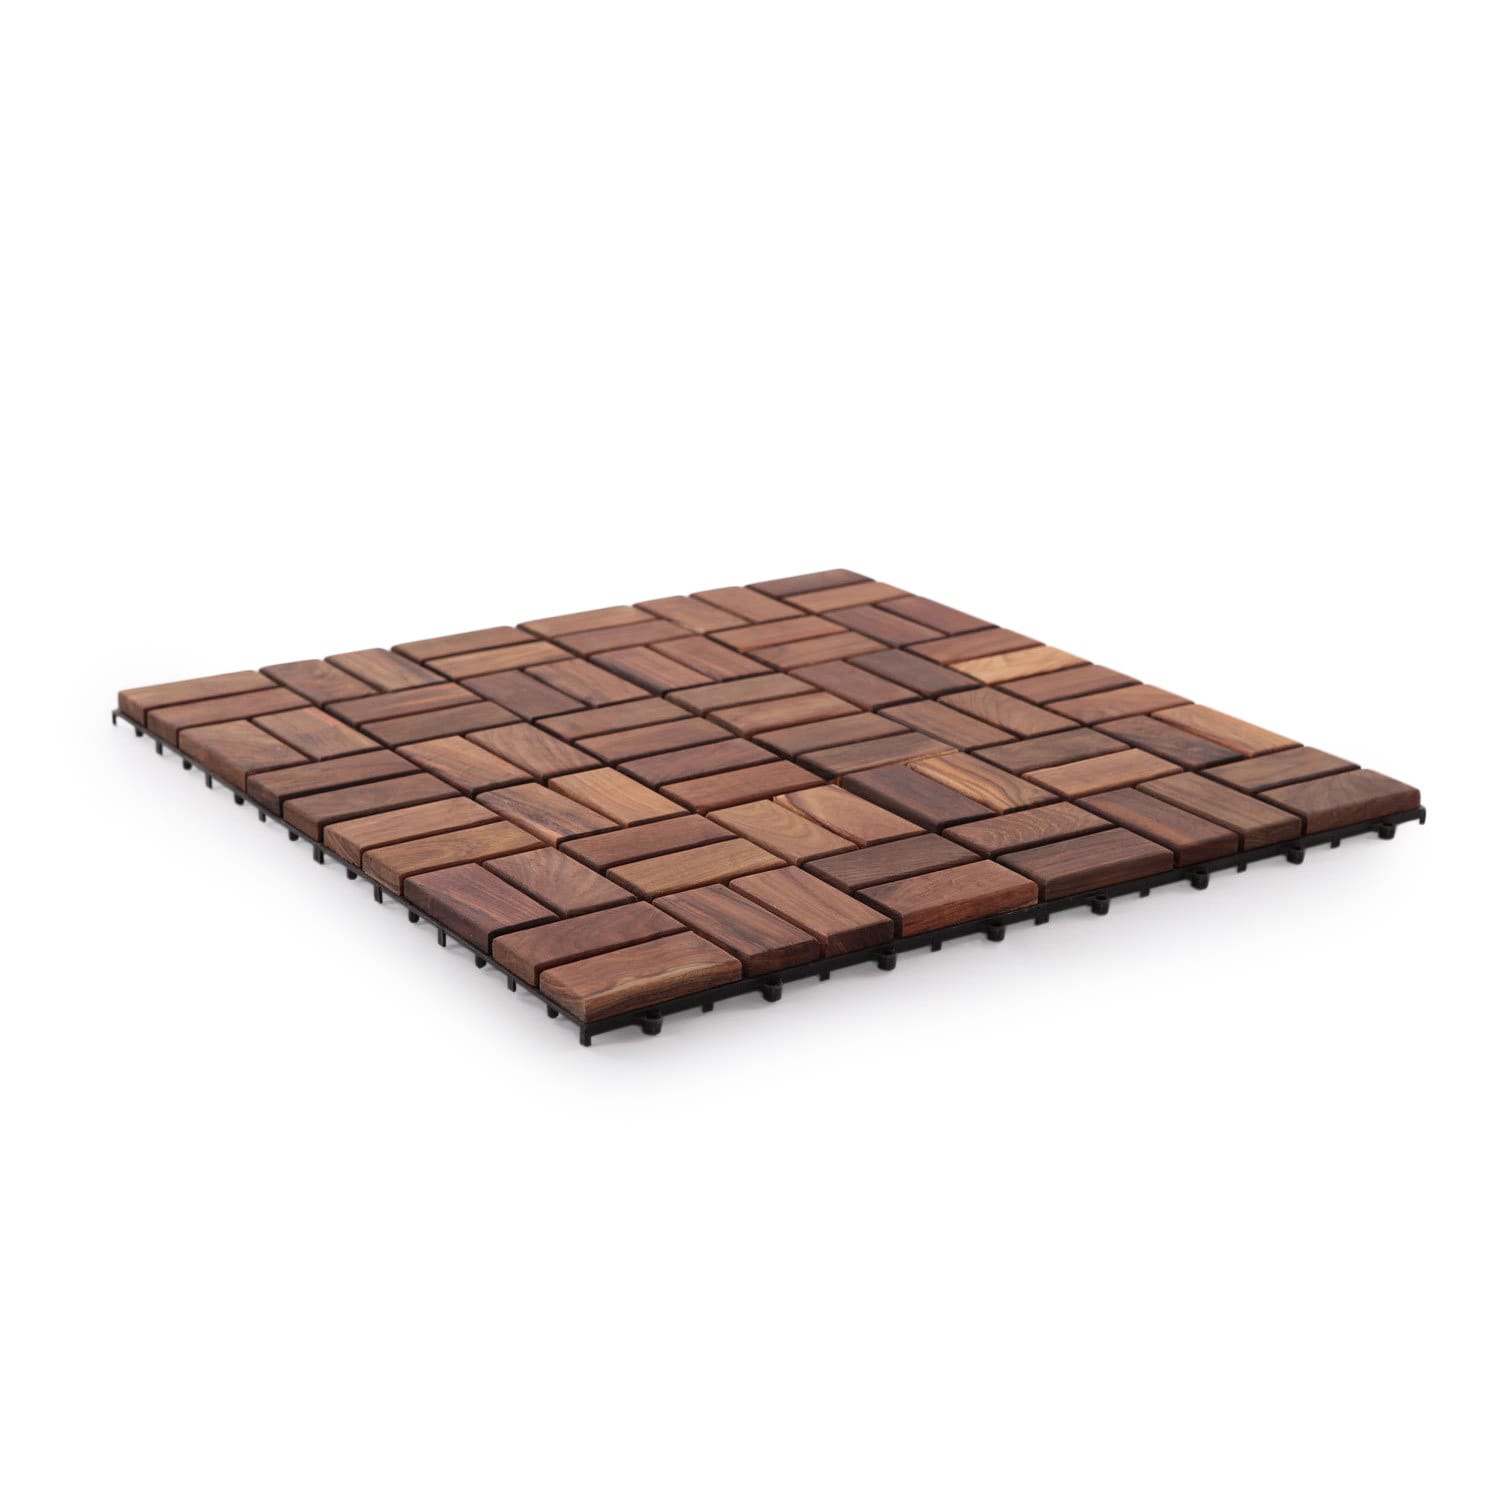 Nordic Style Natural Teak Wood Floor Tiles 9 slats 10 pcs per box 10sq ft